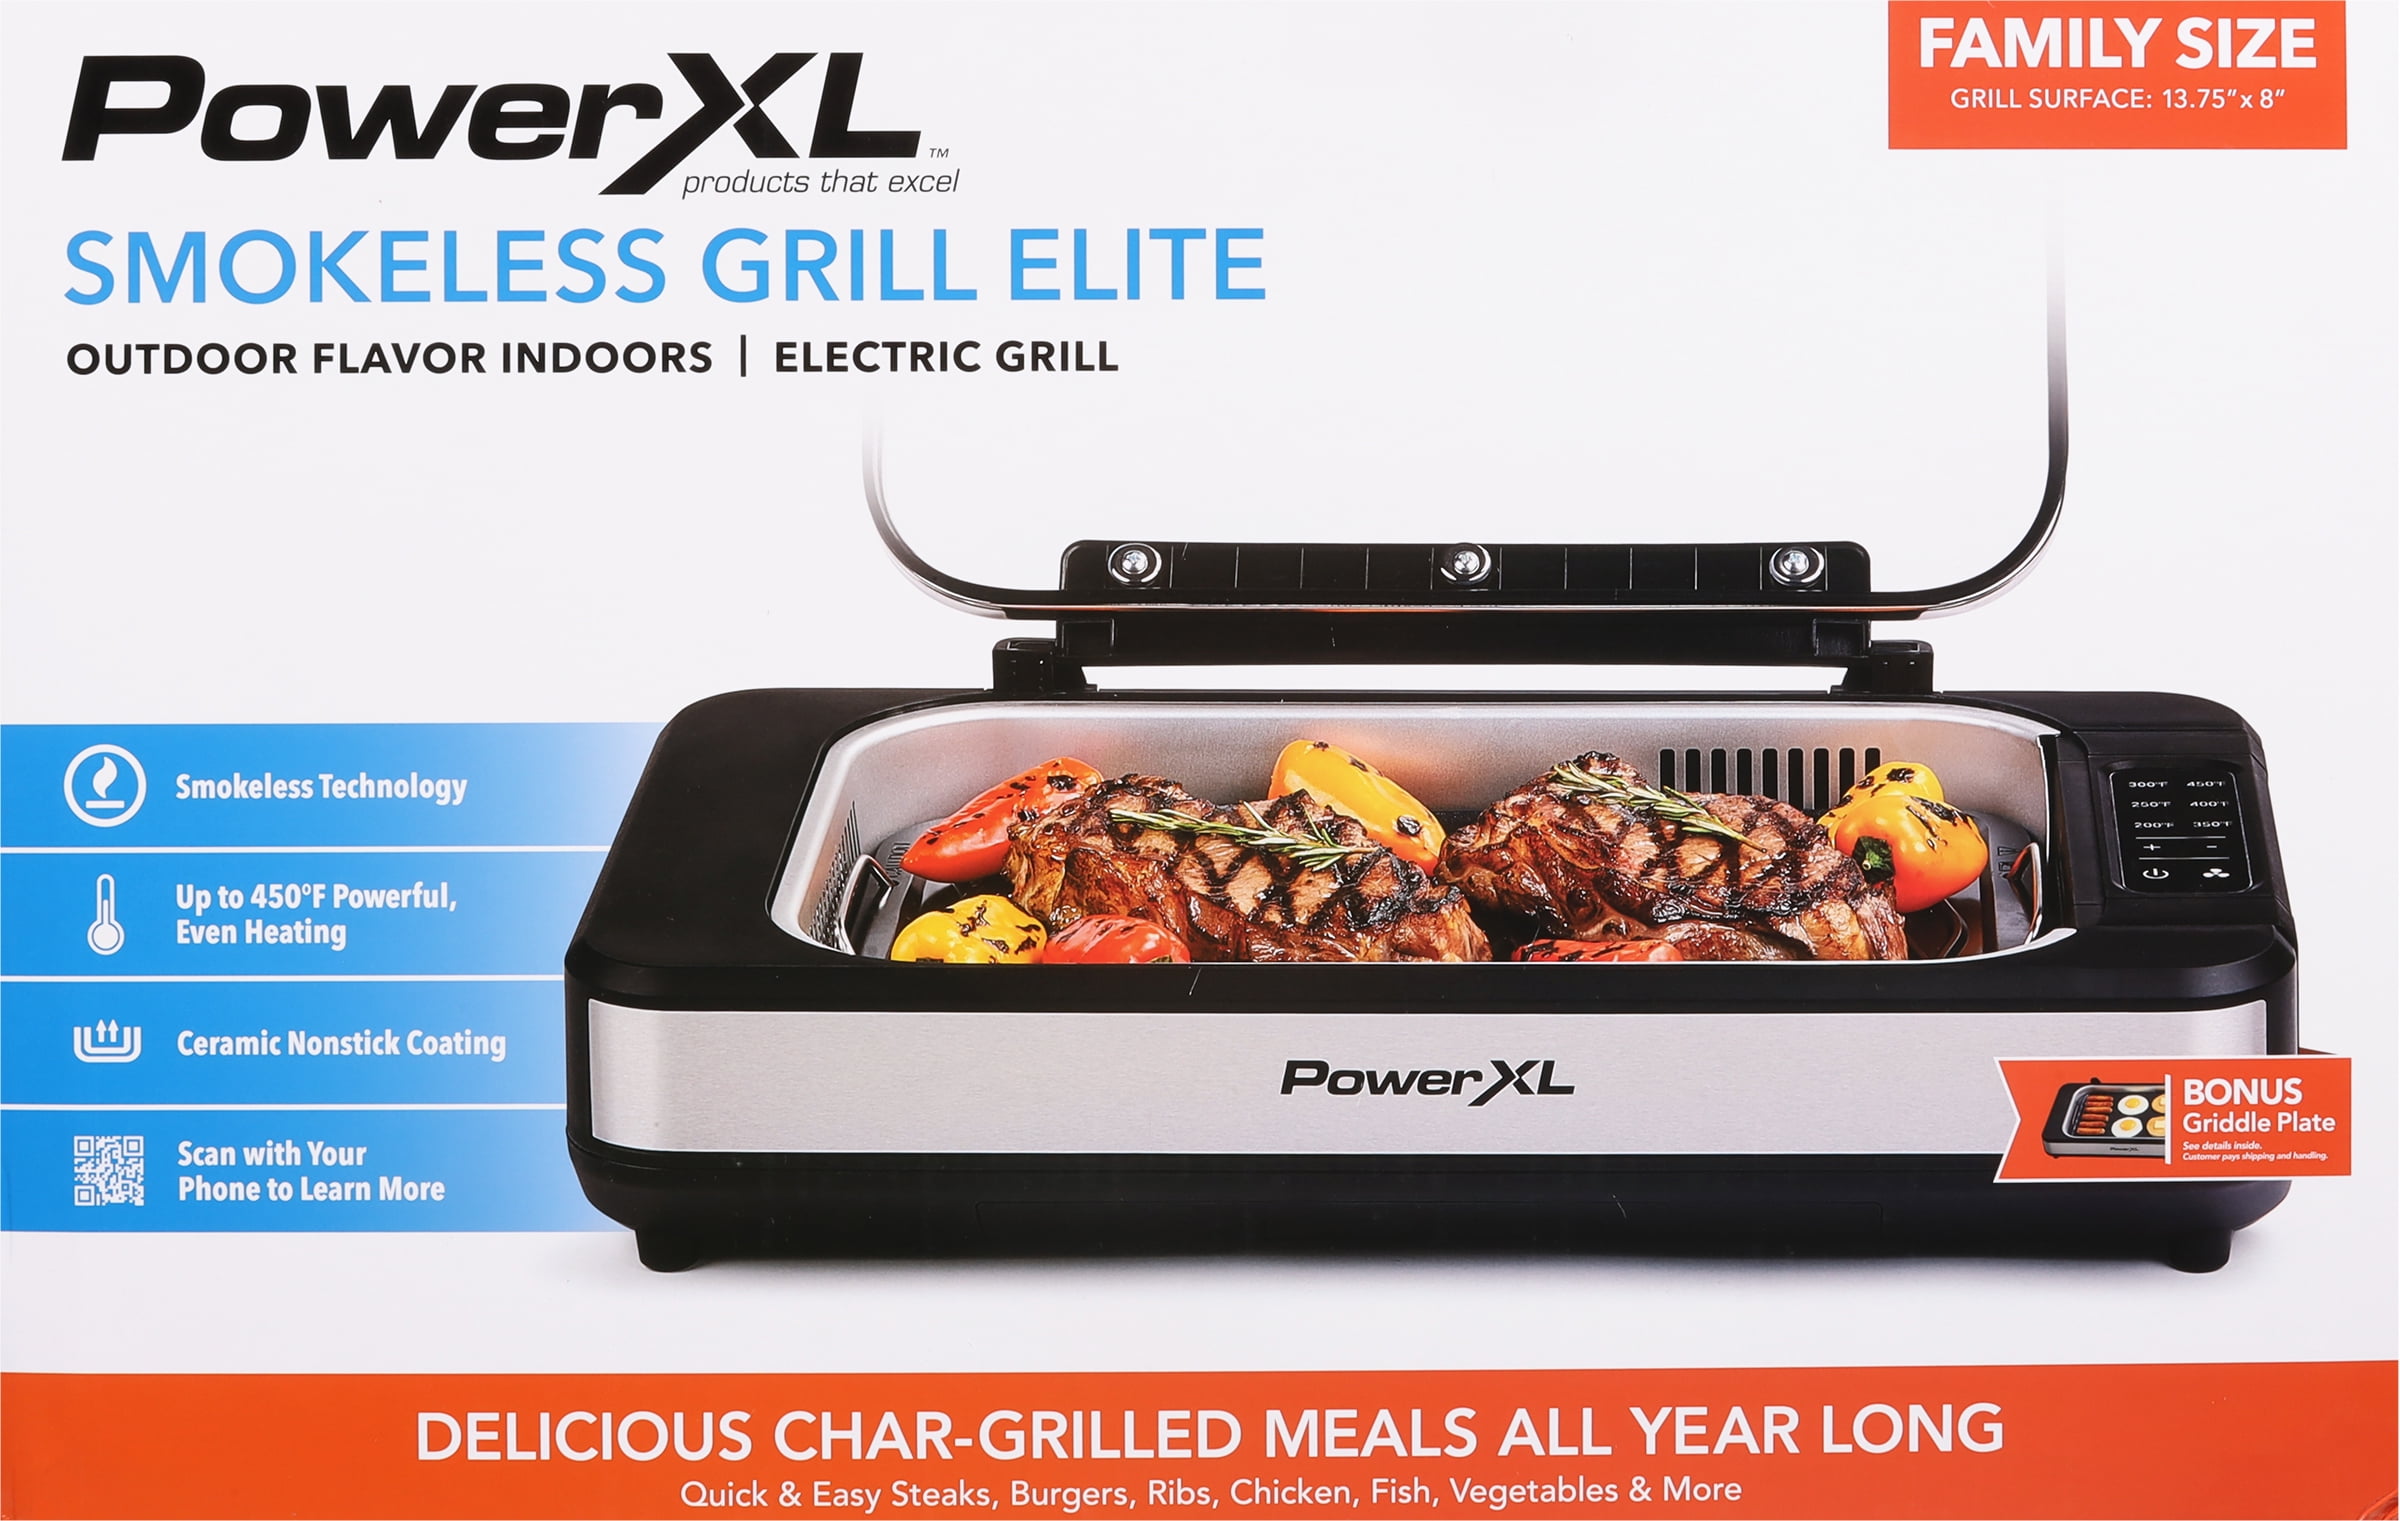 Power XL 1500 W Smokeless Grill Pro - Black/Silver - Brand New